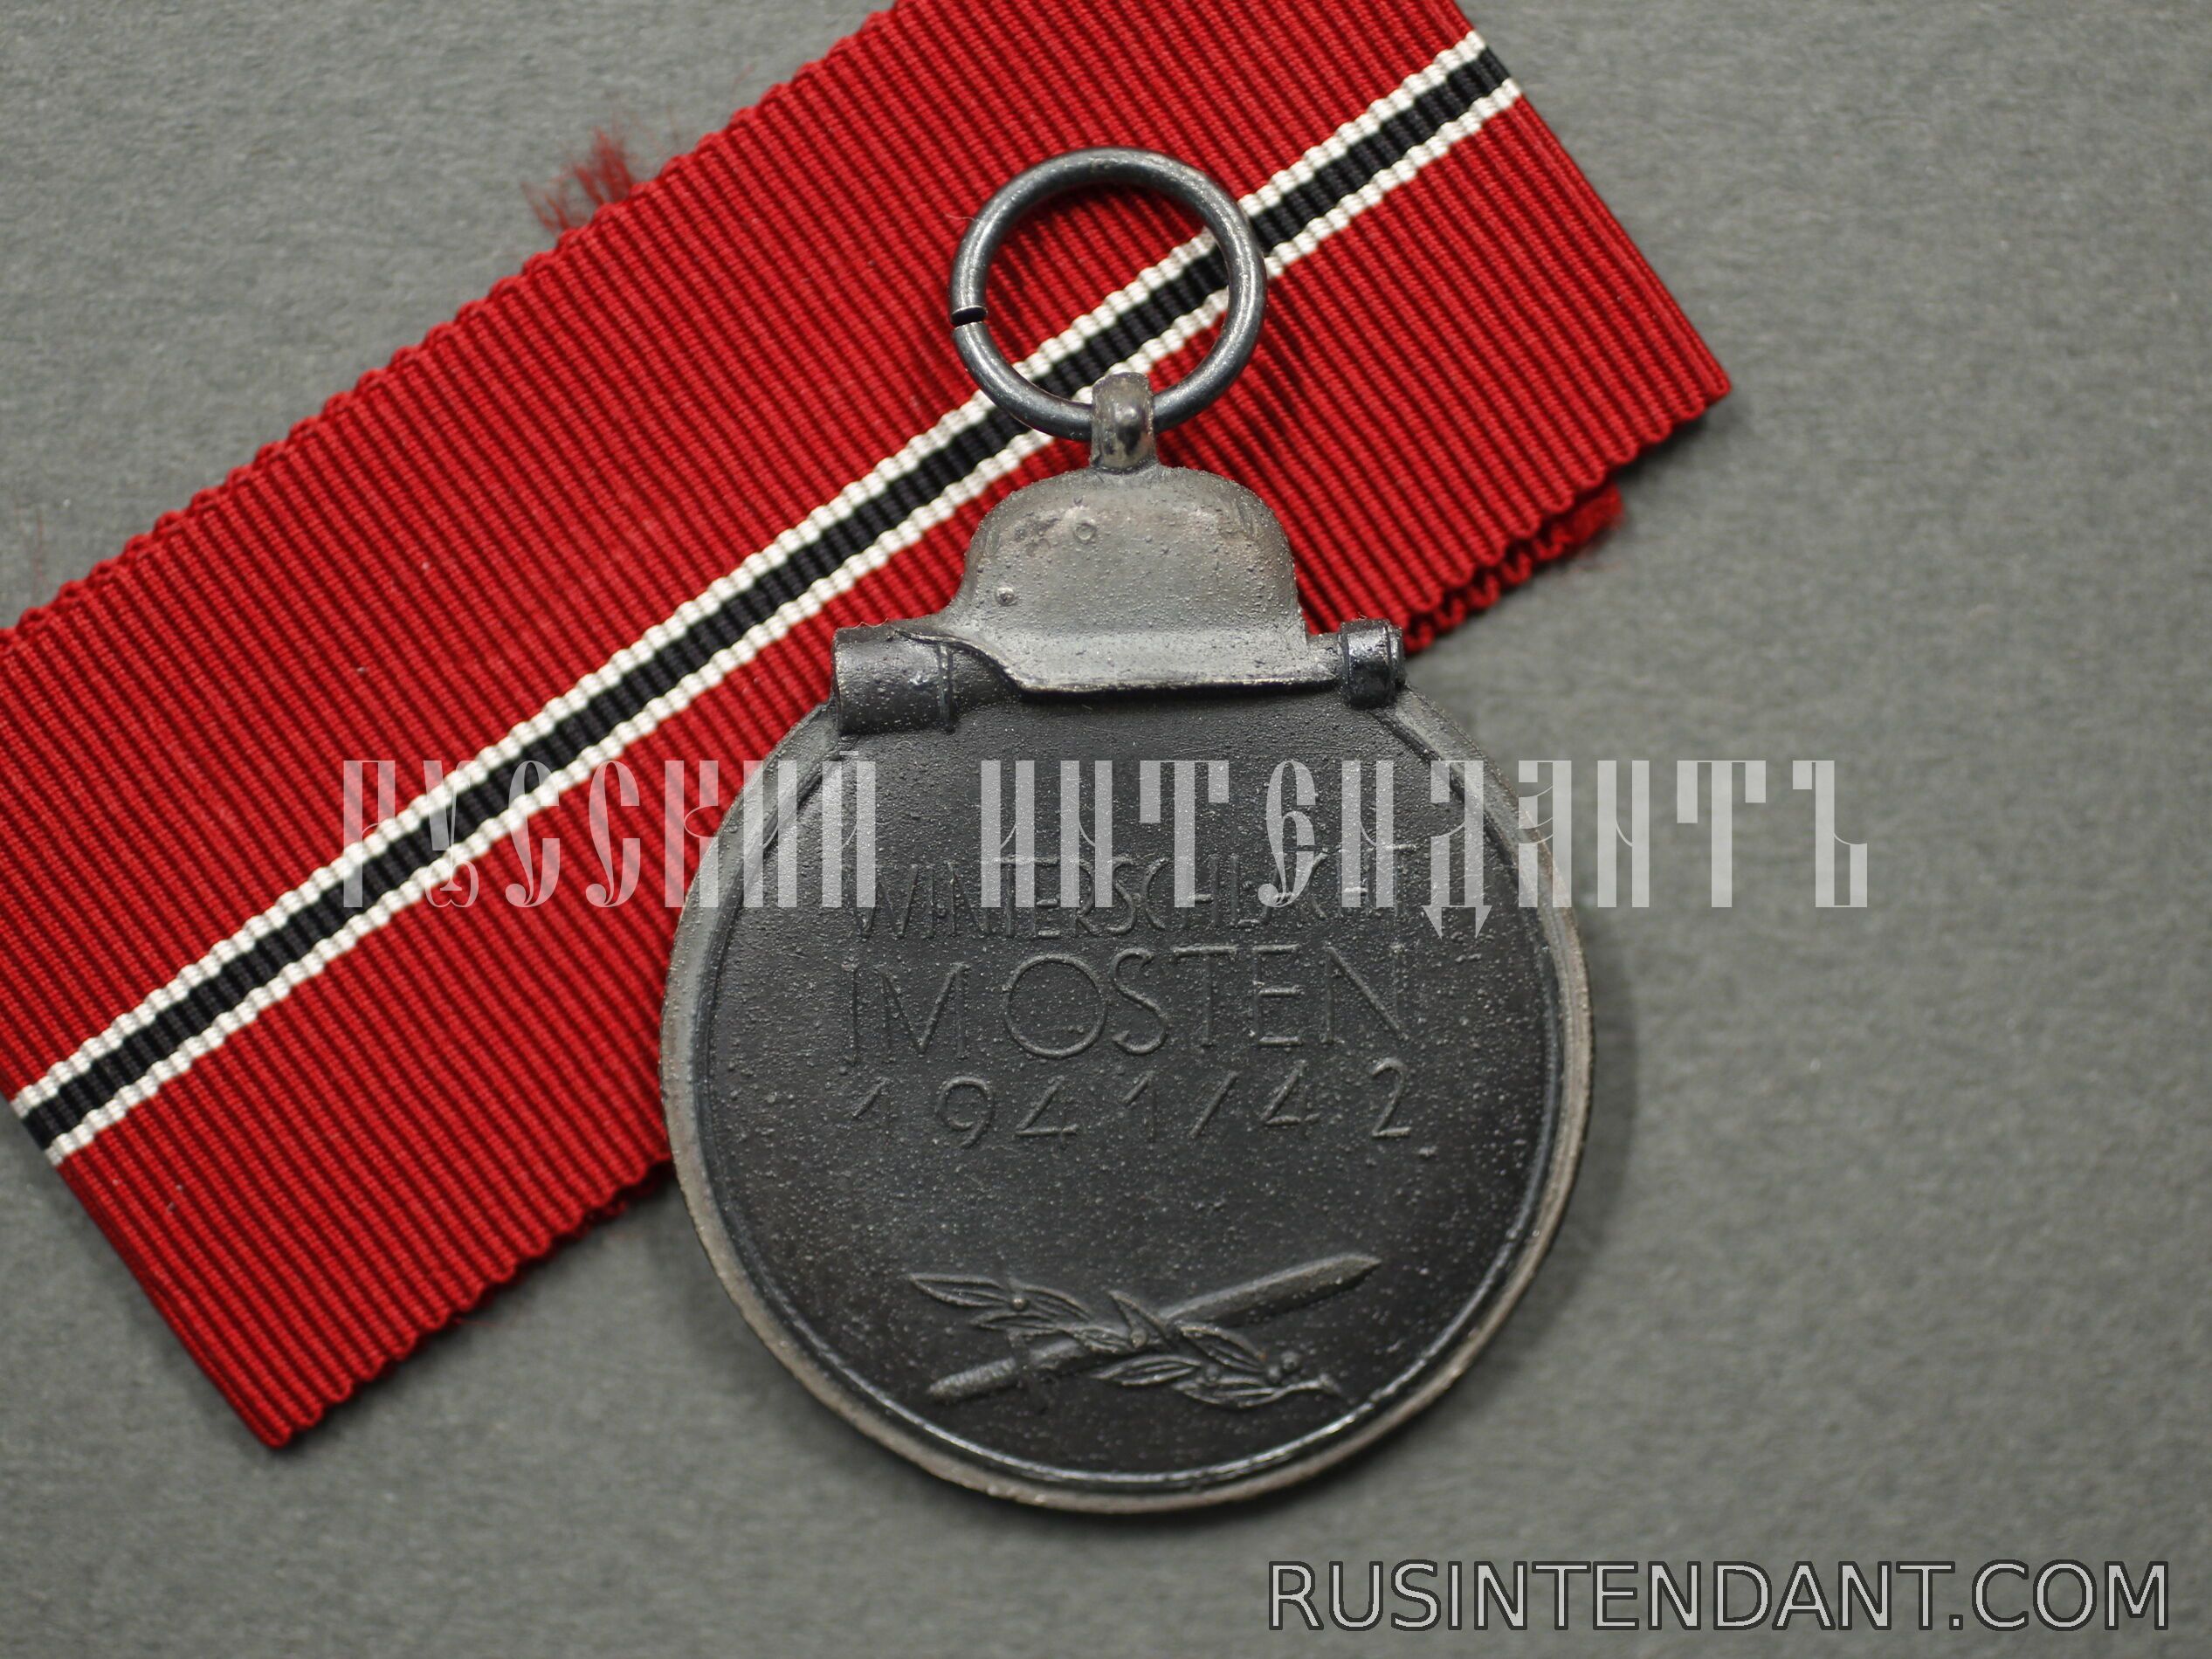 Фото 3: Медаль «За зимнее сражение на Востоке 1941/42» 